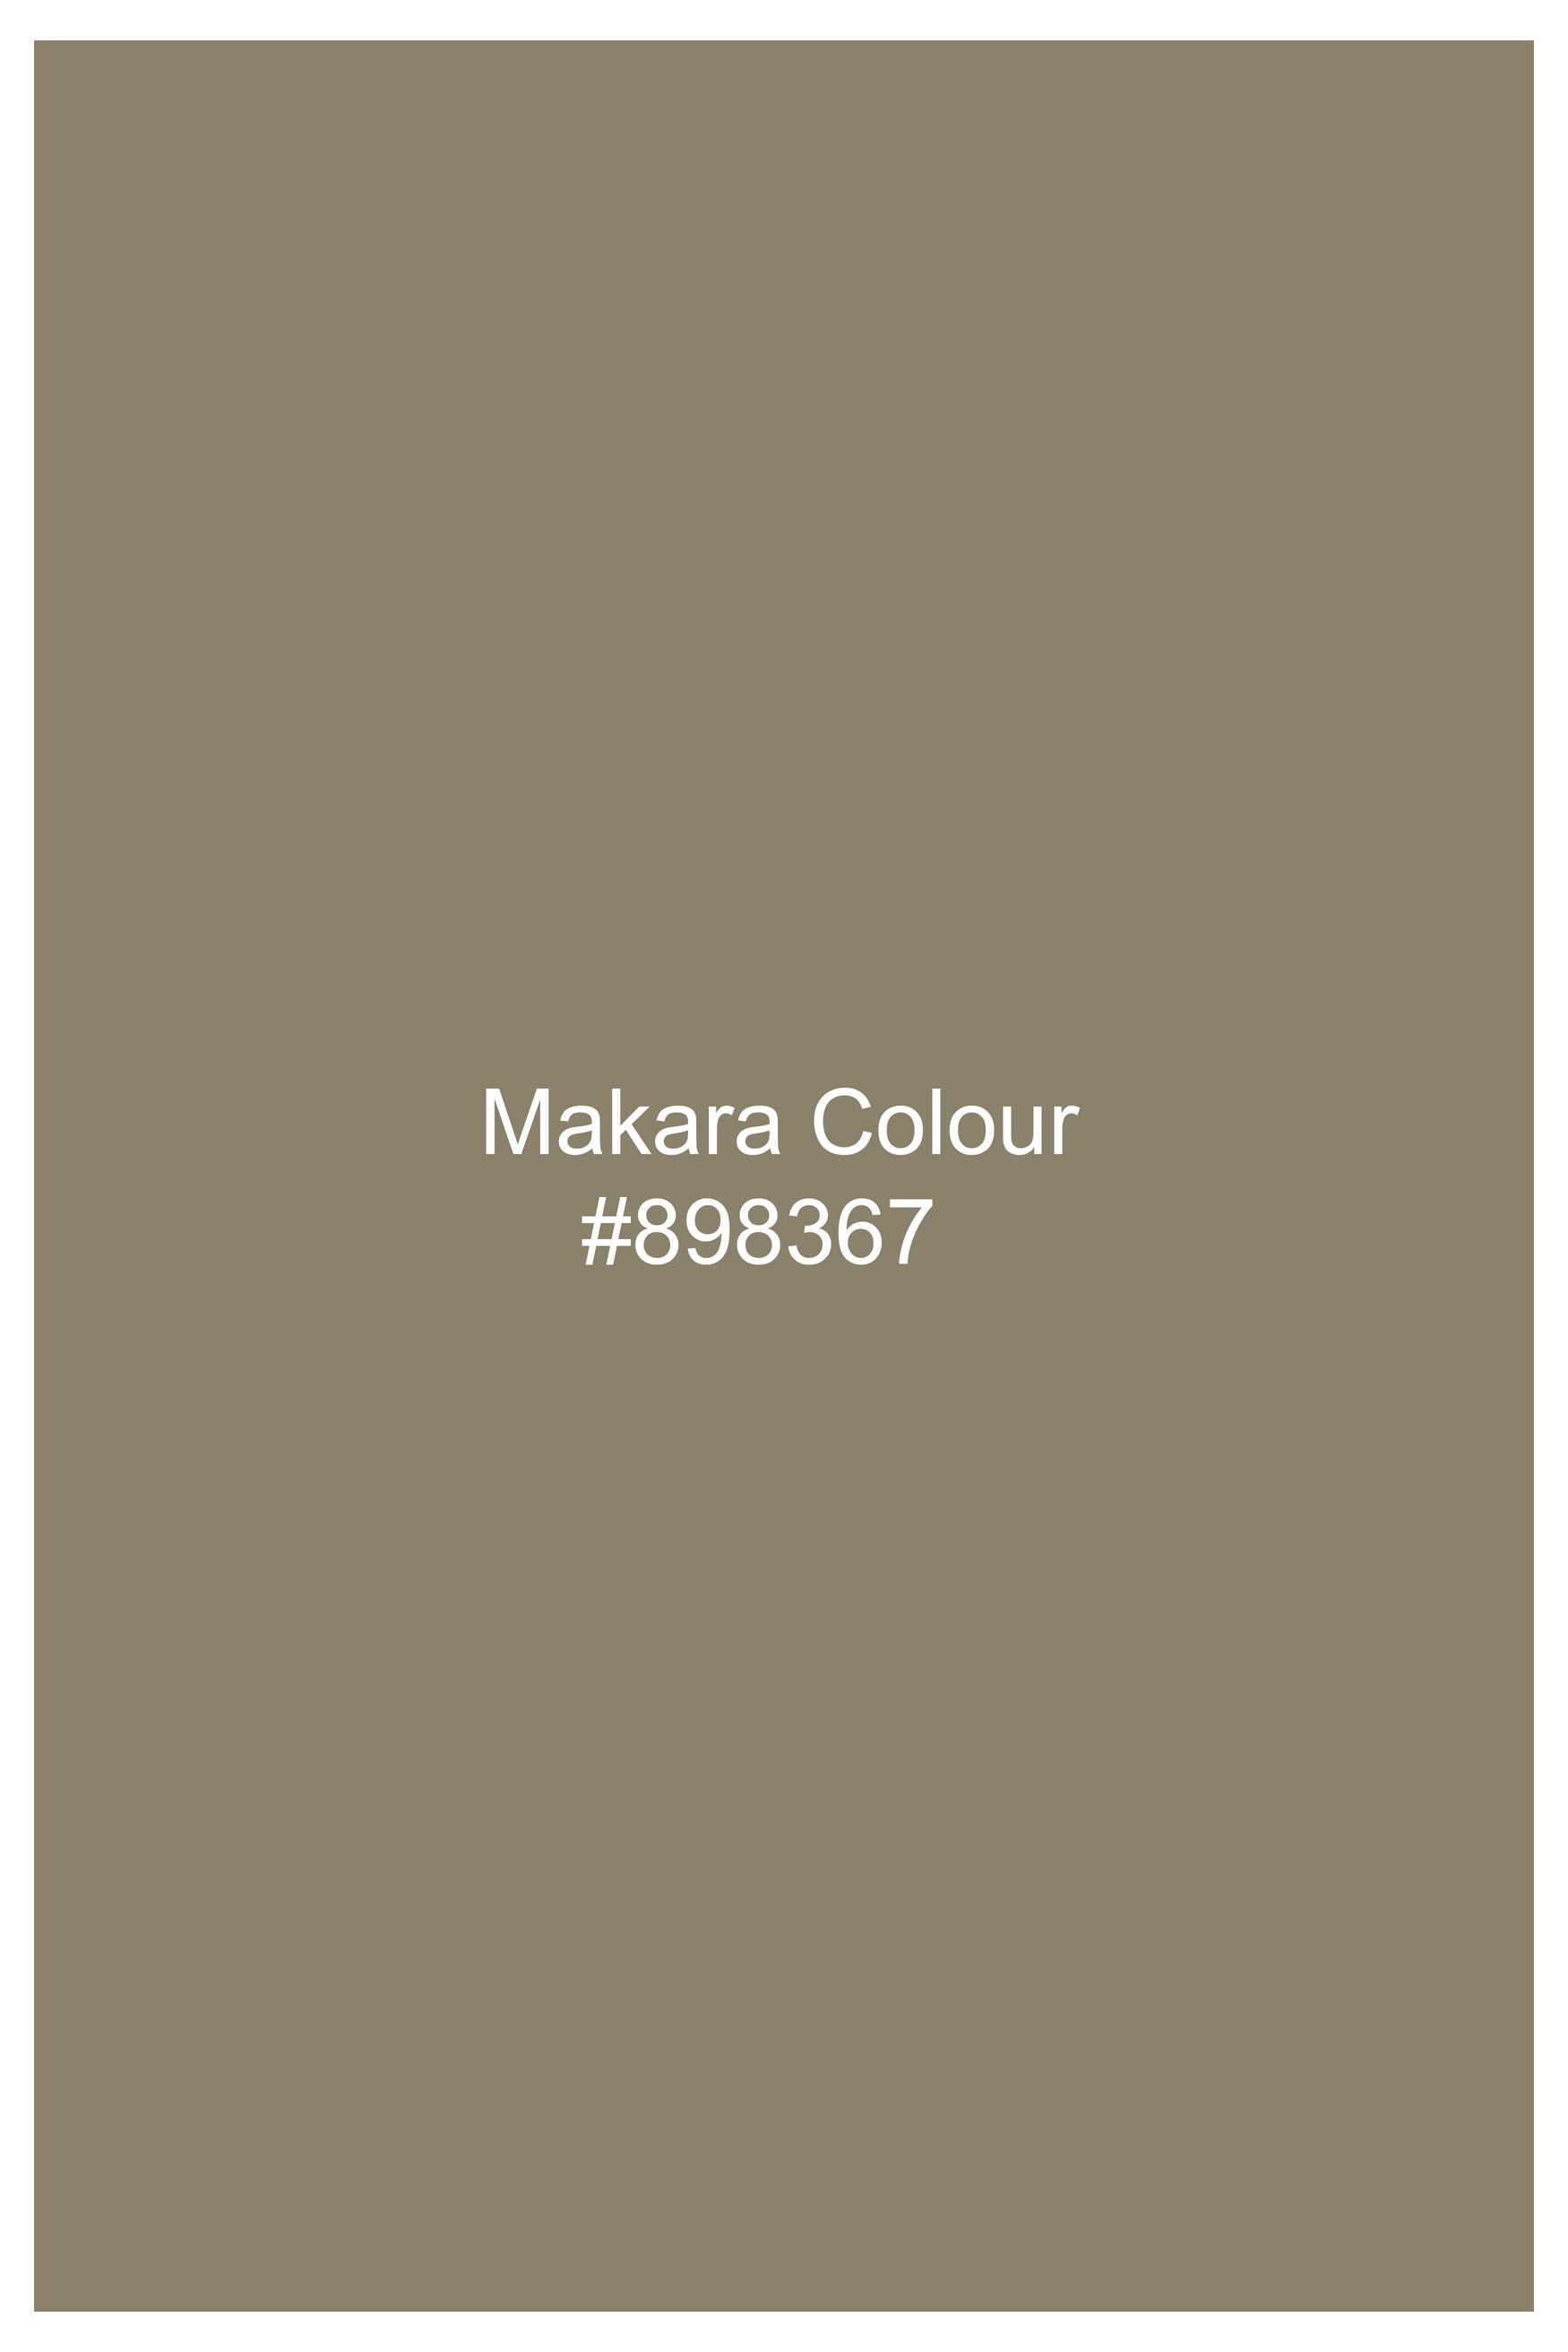 Makara Brown Luxurious Linen Shorts SR394-28, SR394-30, SR394-32, SR394-34, SR394-36, SR394-38, SR394-40, SR394-42, SR394-44